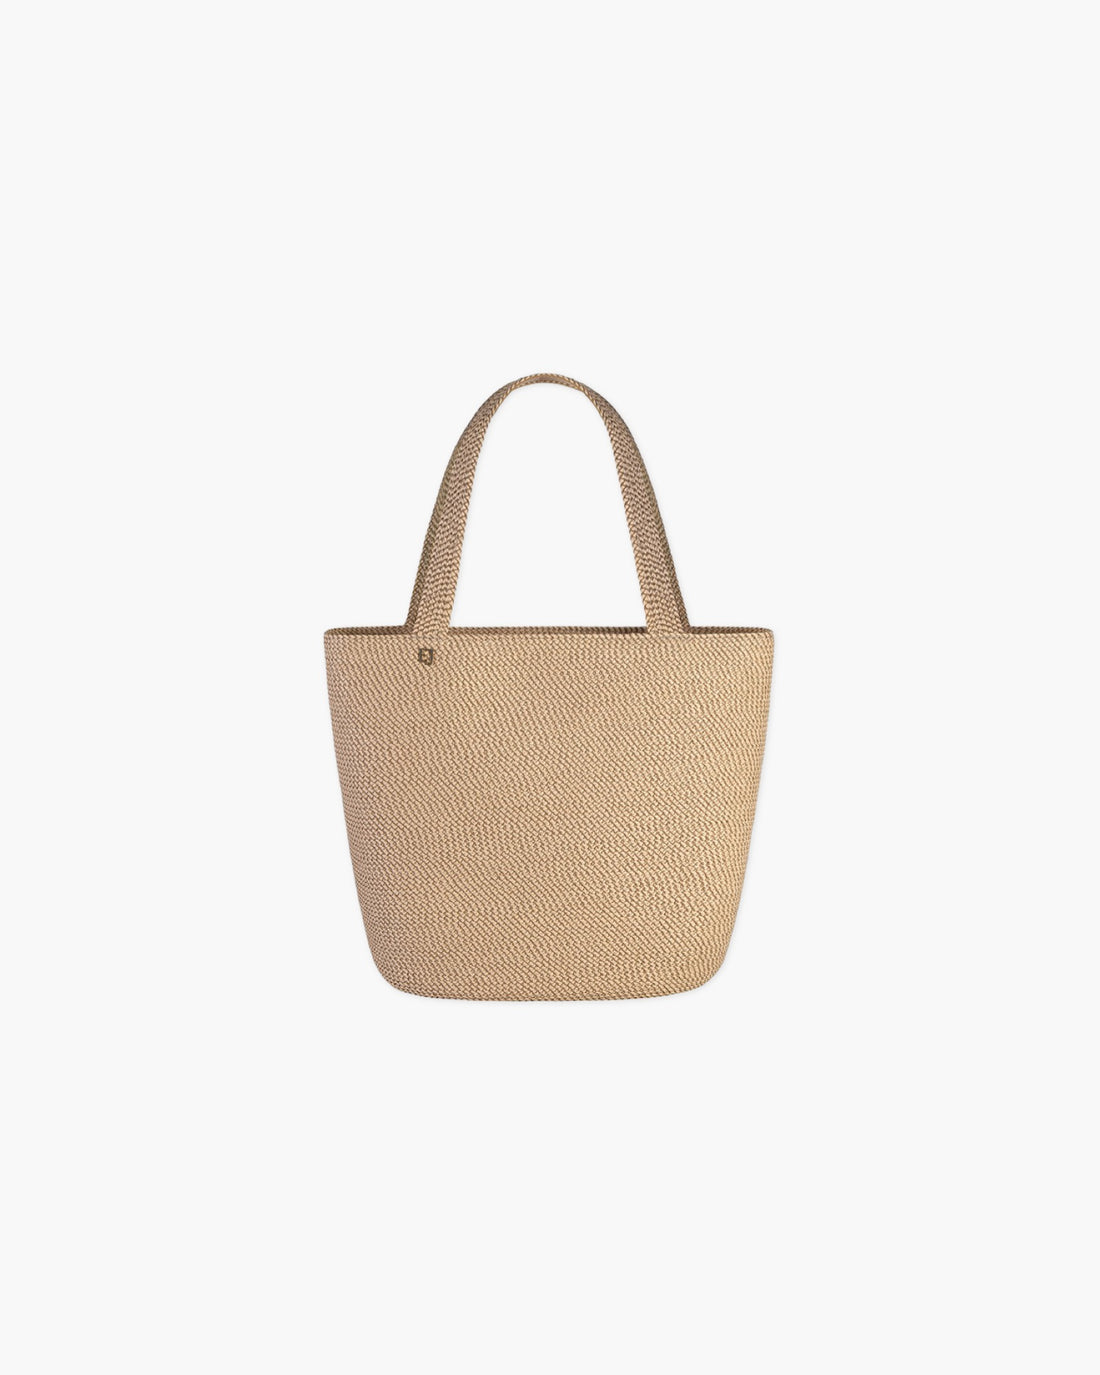 Squishee® Tote II Straw Bag | Mid-Size Tote | Eric Javits | Eric Javits